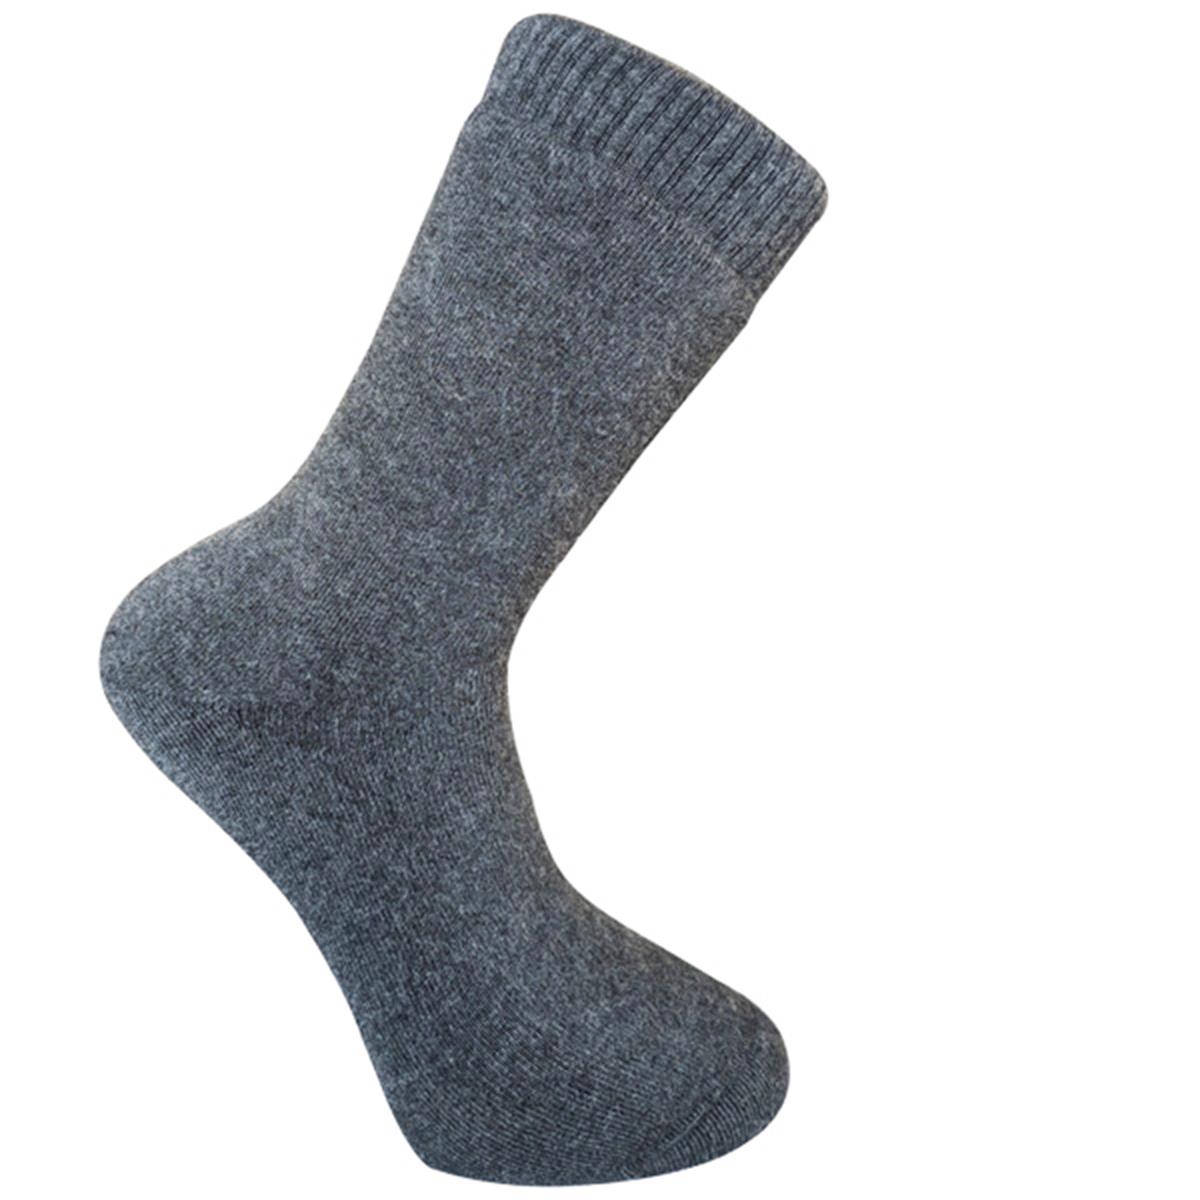 Pro Çorap Termal Havlu Erkek Çorabı Gri 41-44 (19601) - Polis Sepeti